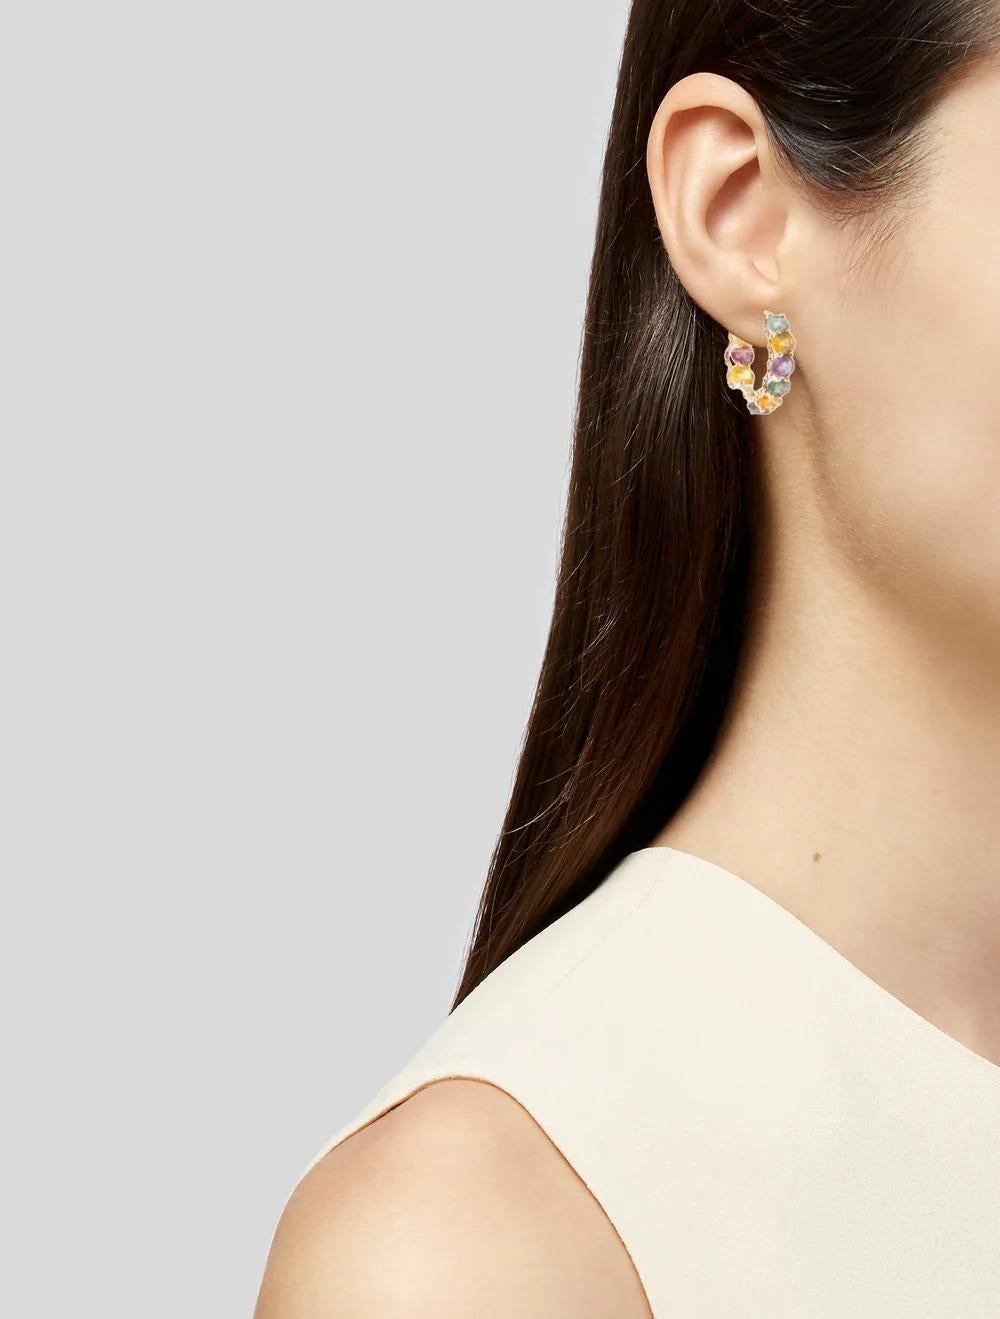 Erhöhen Sie Ihren Stil mit diesen atemberaubenden Ohrringen aus 14 Karat Gelbgold, die mit einem faszinierenden ovalen Brillantsaphir von 7,00 Karat verziert sind. Diese perfekt gefertigten Ohrringe strahlen Eleganz und Raffinesse aus und sind eine